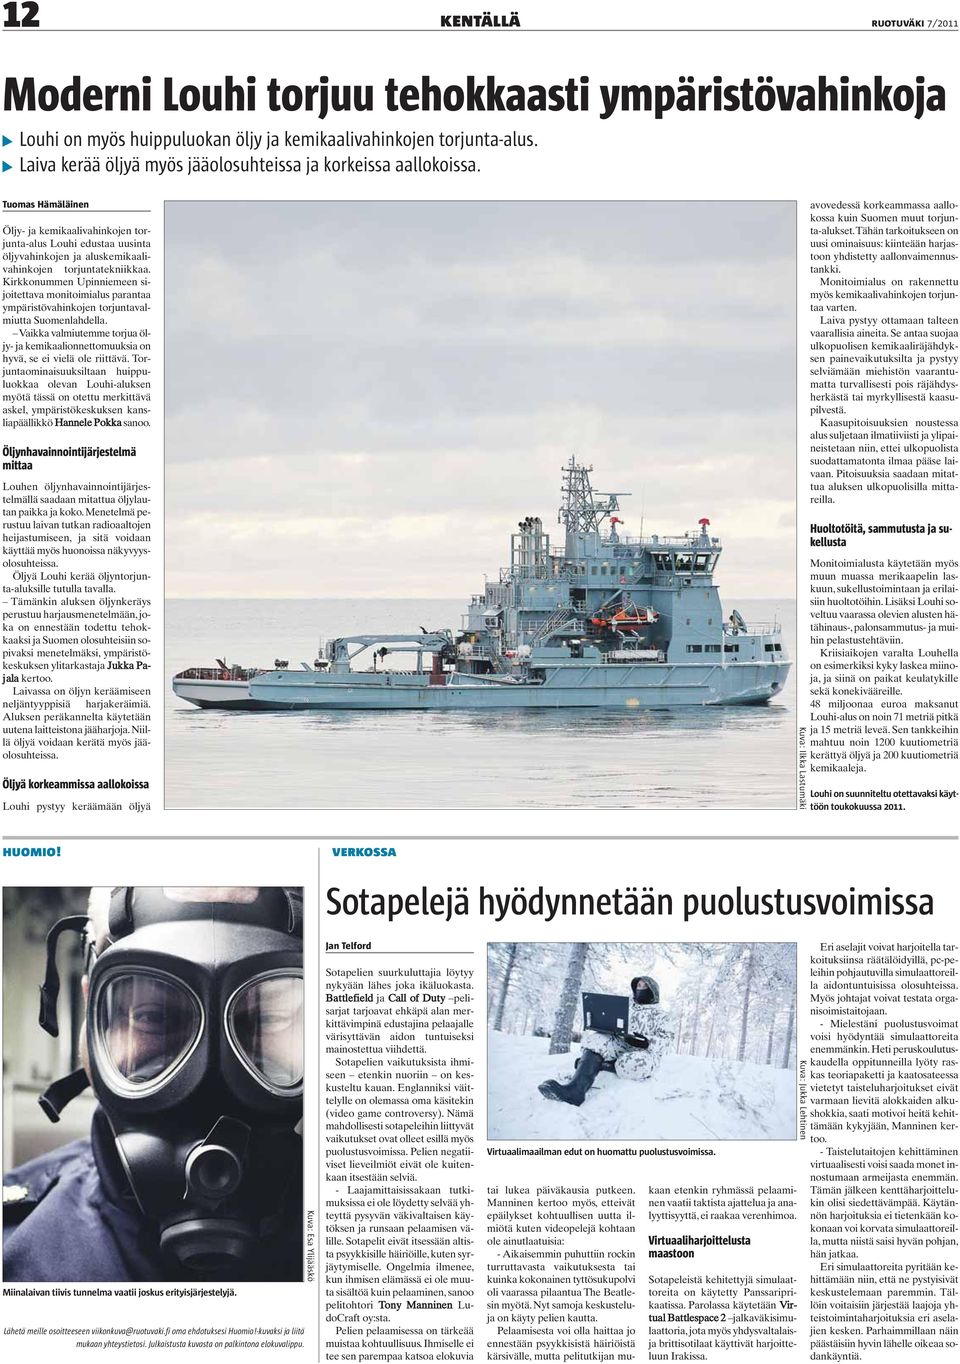 Tuomas Hämäläinen Öljy- ja kemikaalivahinkojen torjunta-alus Louhi edustaa uusinta öljyvahinkojen ja aluskemikaalivahinkojen torjuntatekniikkaa.